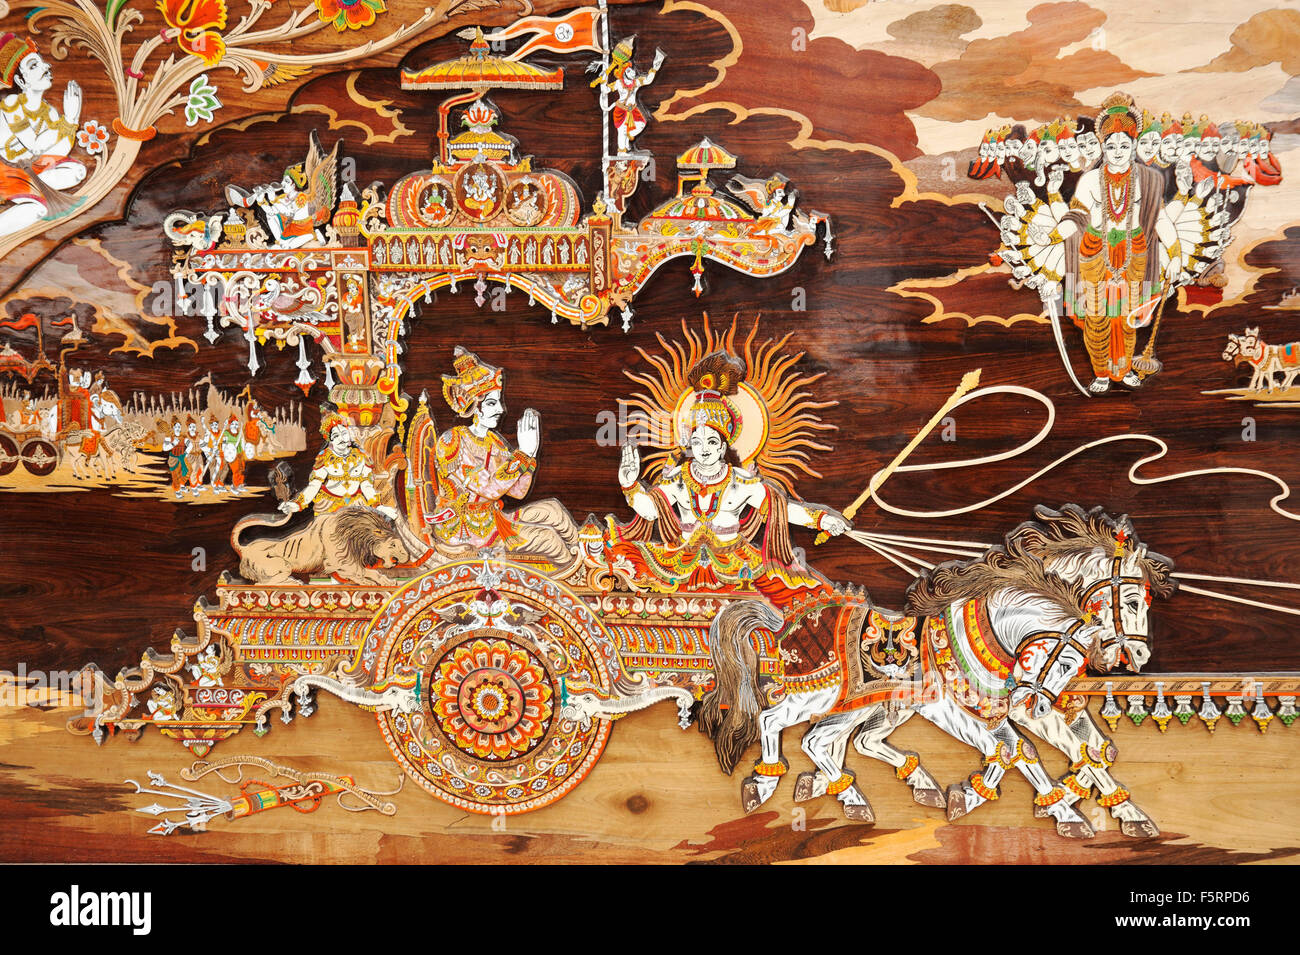 Peinture sur bois d'Arjun et de Lord Krishna de Mahabharat Surajkund foire Haryana Inde Asie Banque D'Images